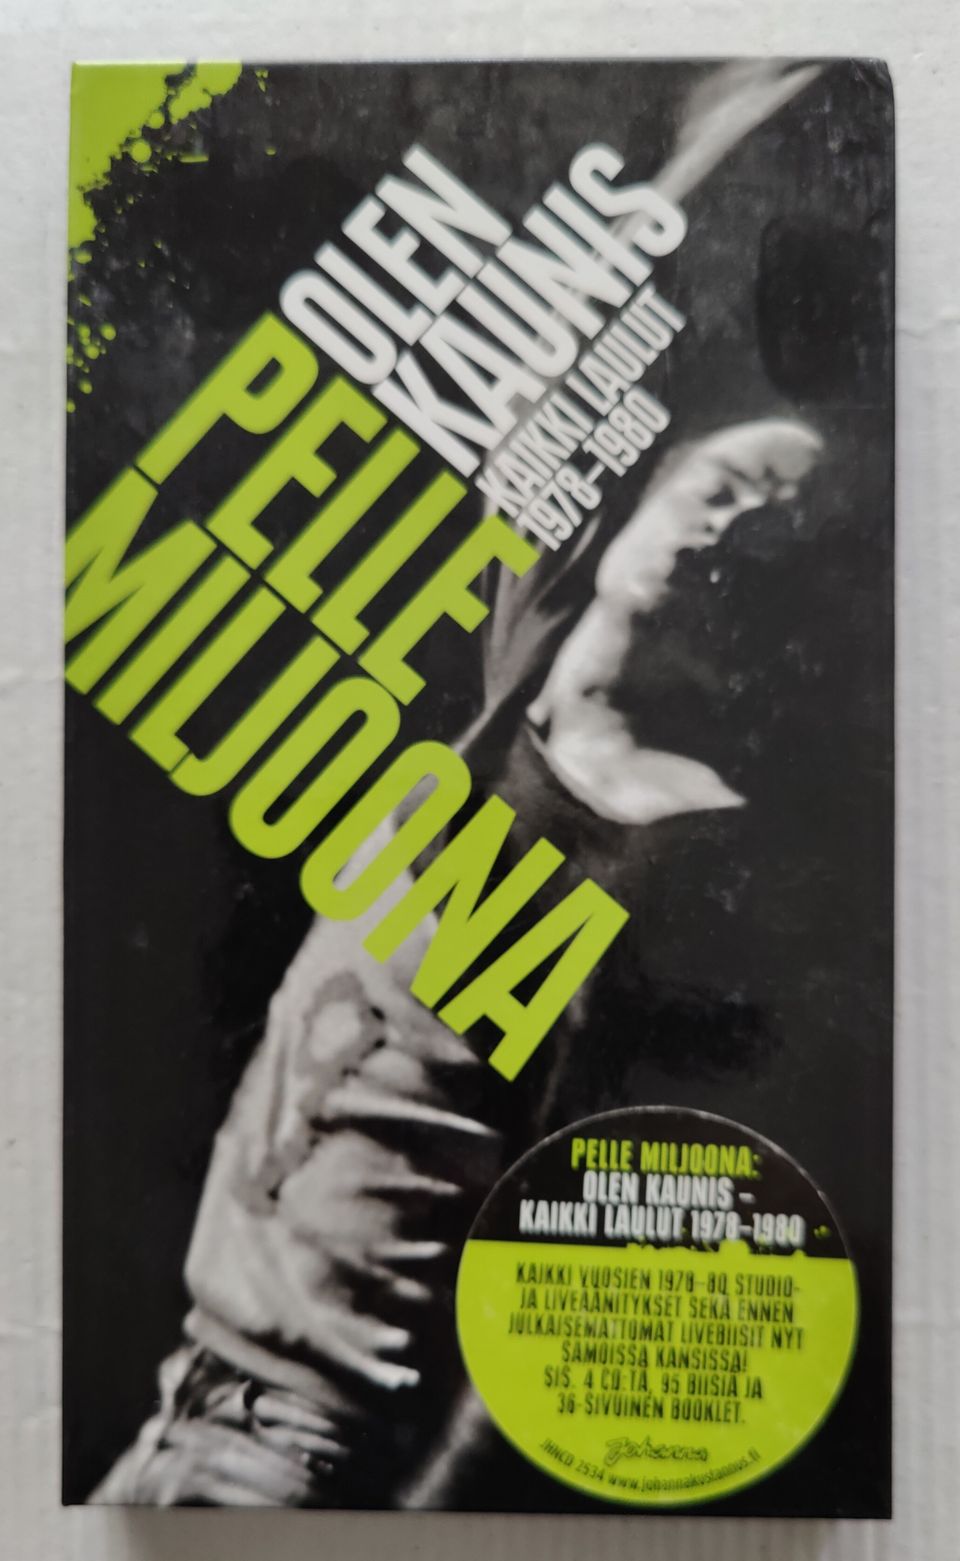 CD Pelle Miljoona/Olen kaunis Kaikki laulut 1978-1980